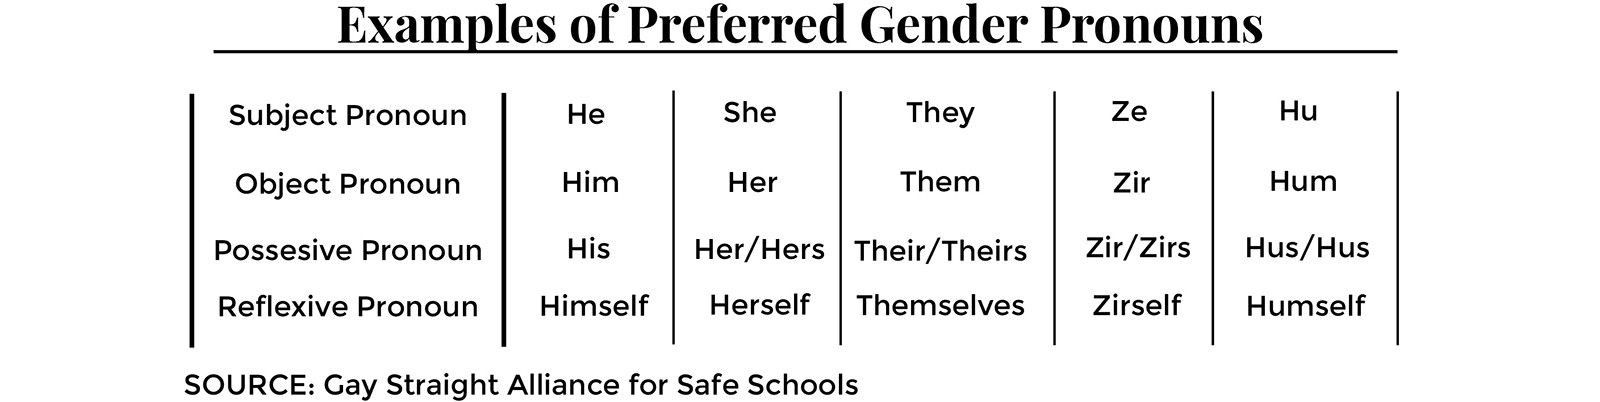 Gender pronounds